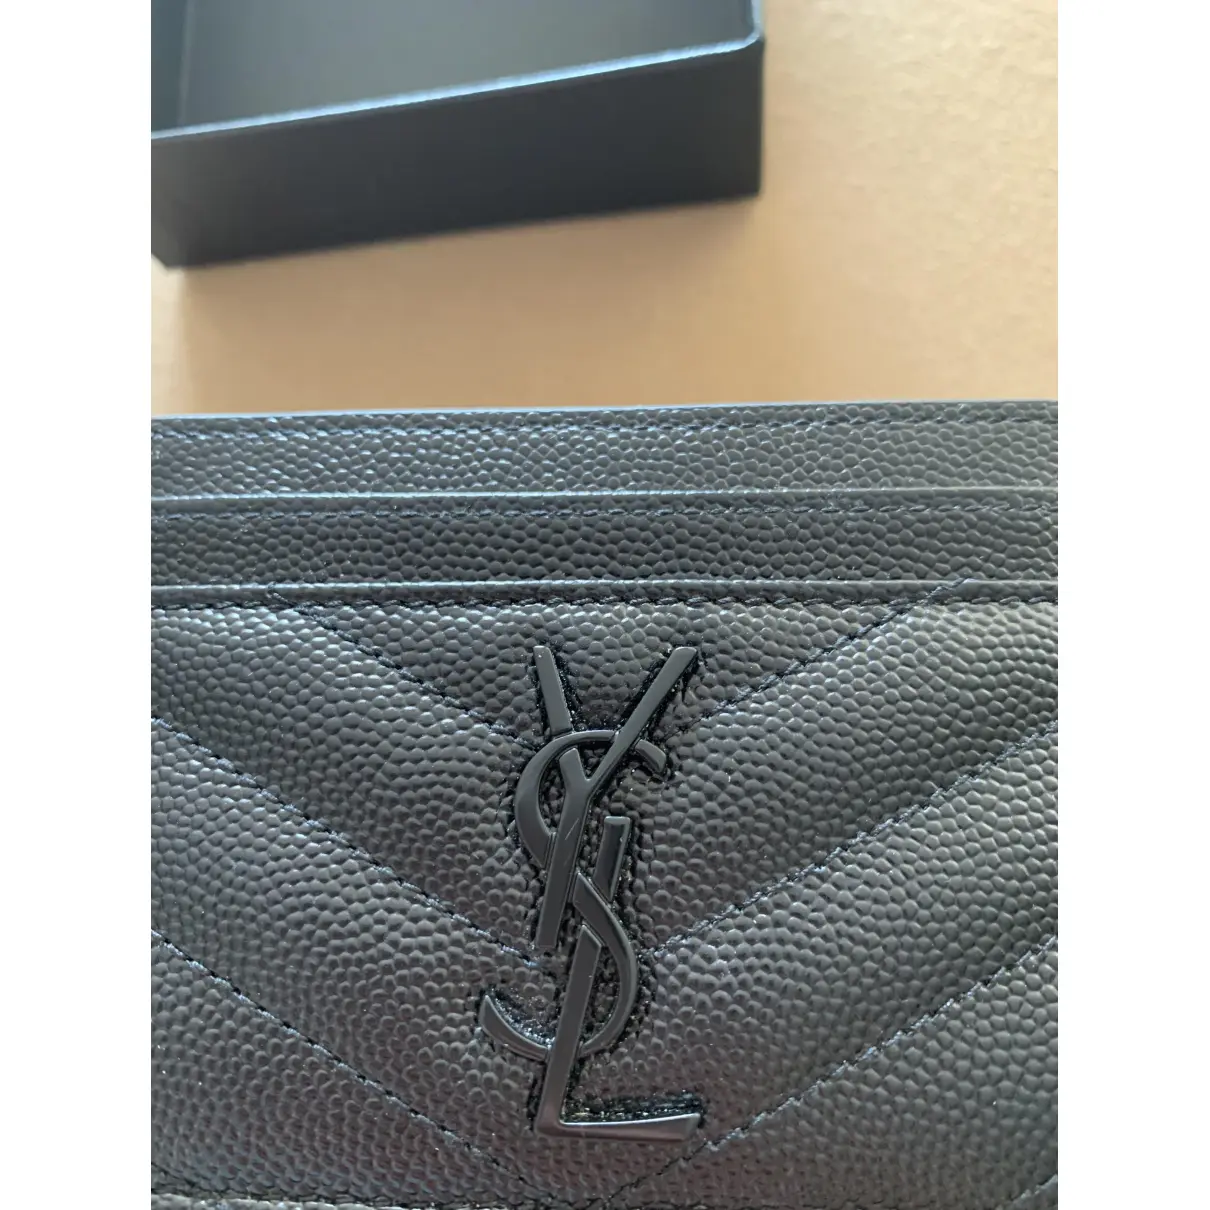 Monogramme leather card wallet Saint Laurent